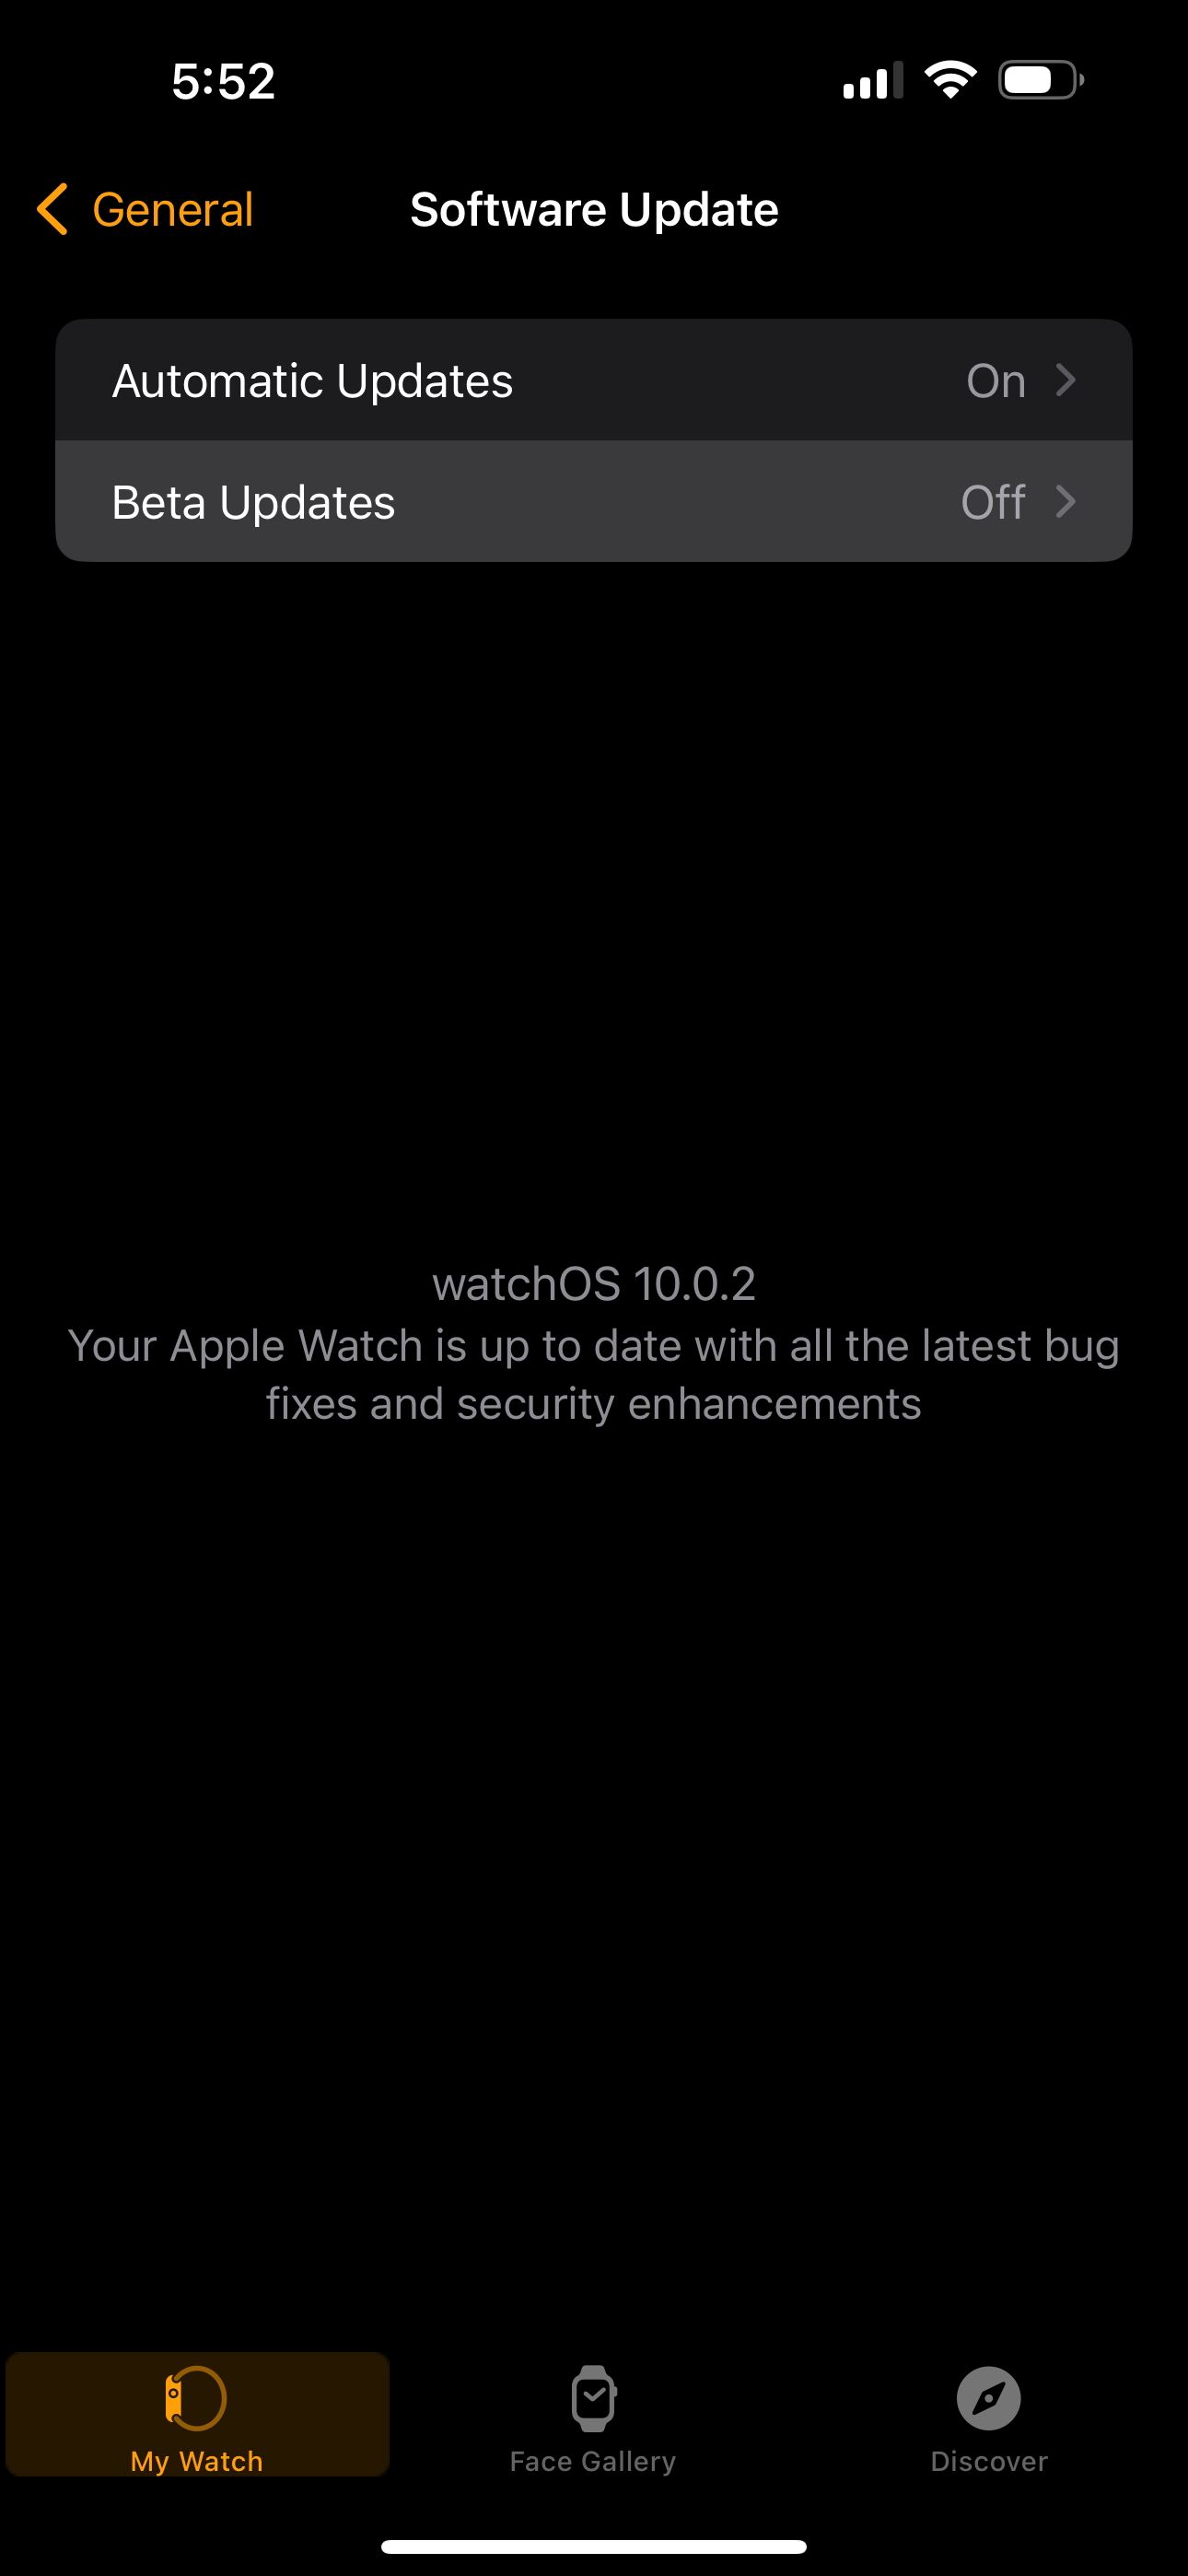 Software Update menu in the Watch app